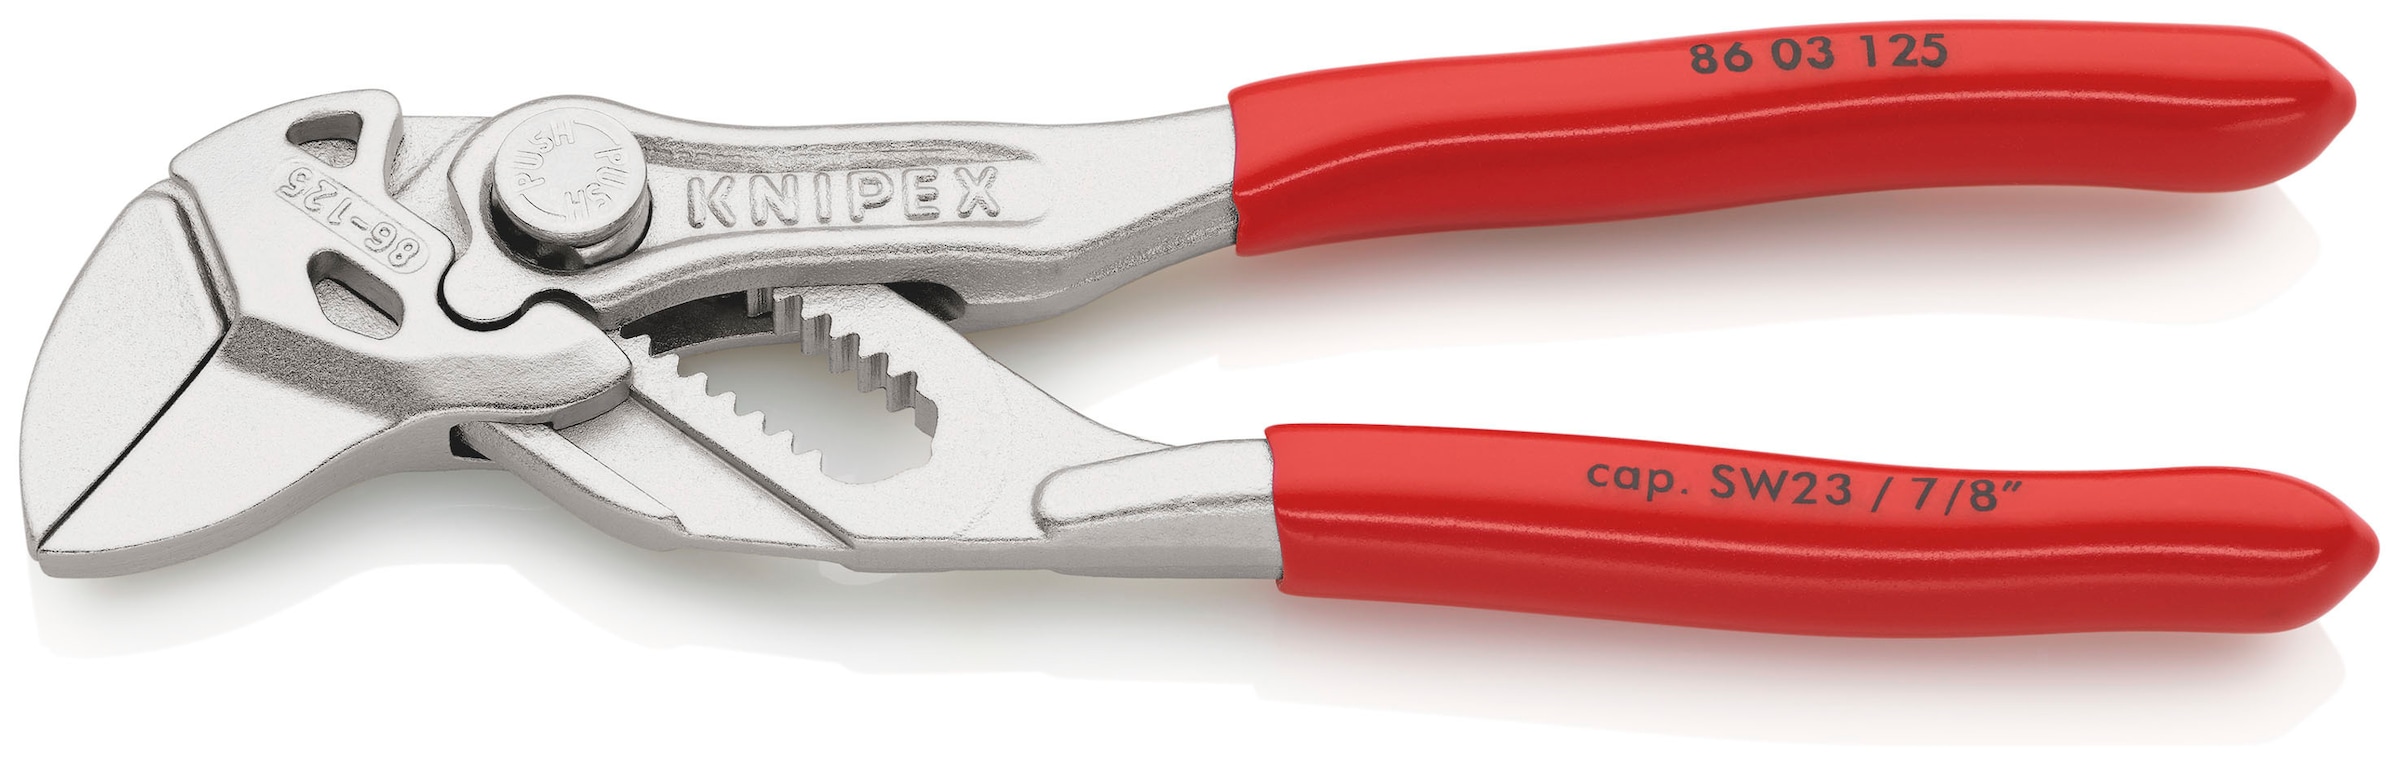 Knipex Zangenschlüssel "86 03 125 Mini, Zange und Schraubenschlüssel in einem Werkzeug", (1 tlg.), verchromt, mit Kunsts